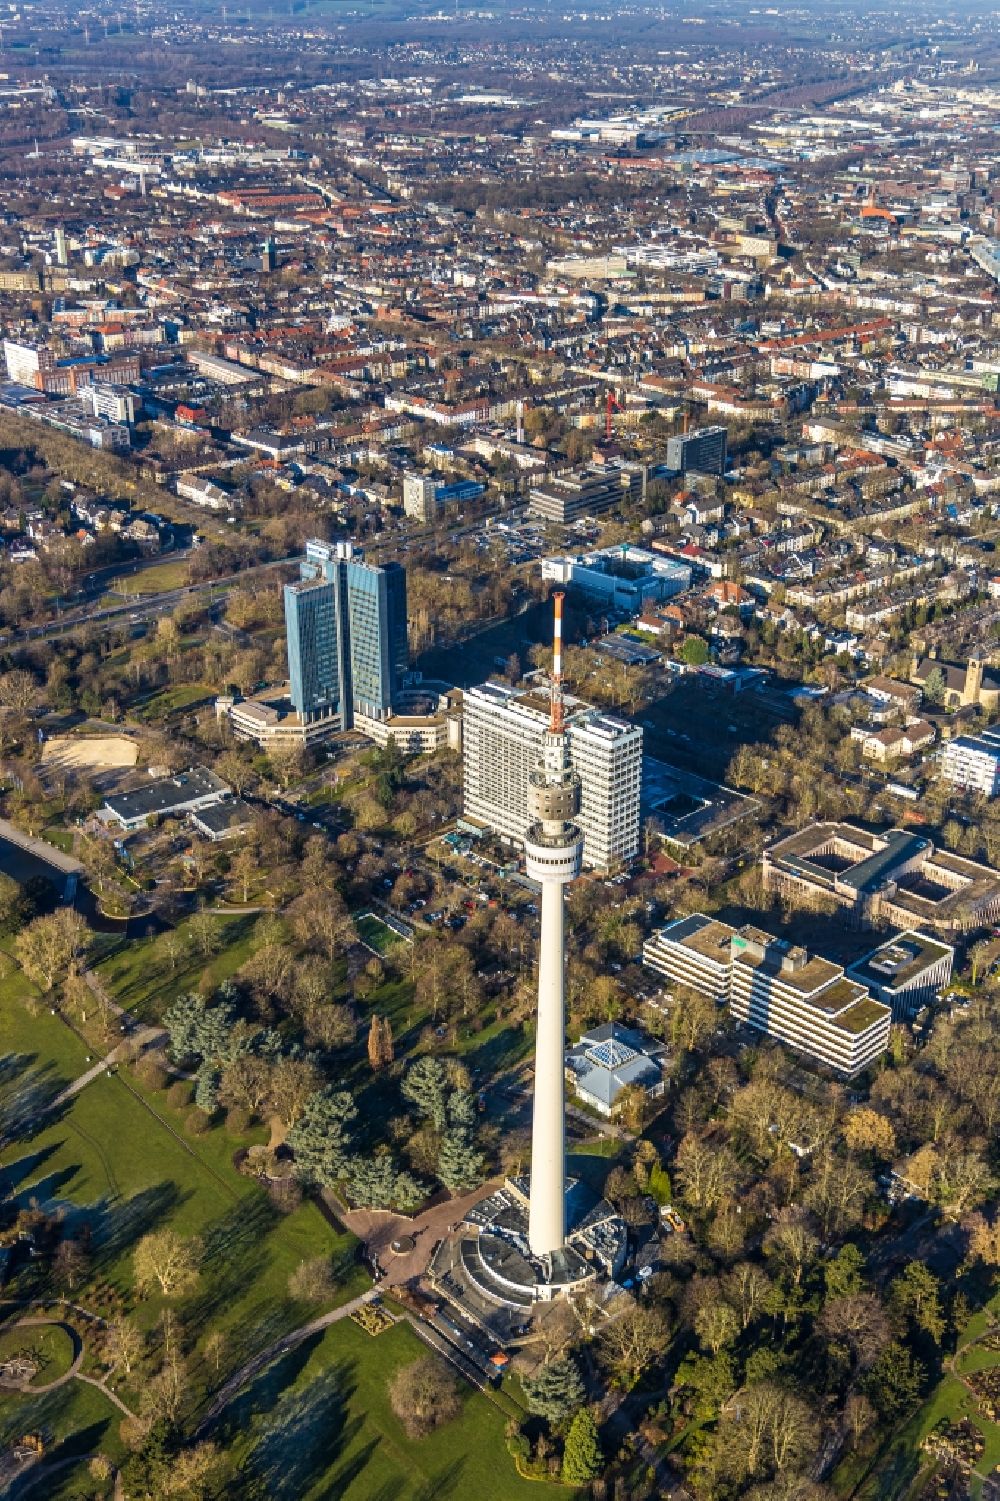 Dortmund von oben - Fernmeldeturm und Fernsehturm Florianturm in Dortmund im Bundesland Nordrhein-Westfalen, Deutschland